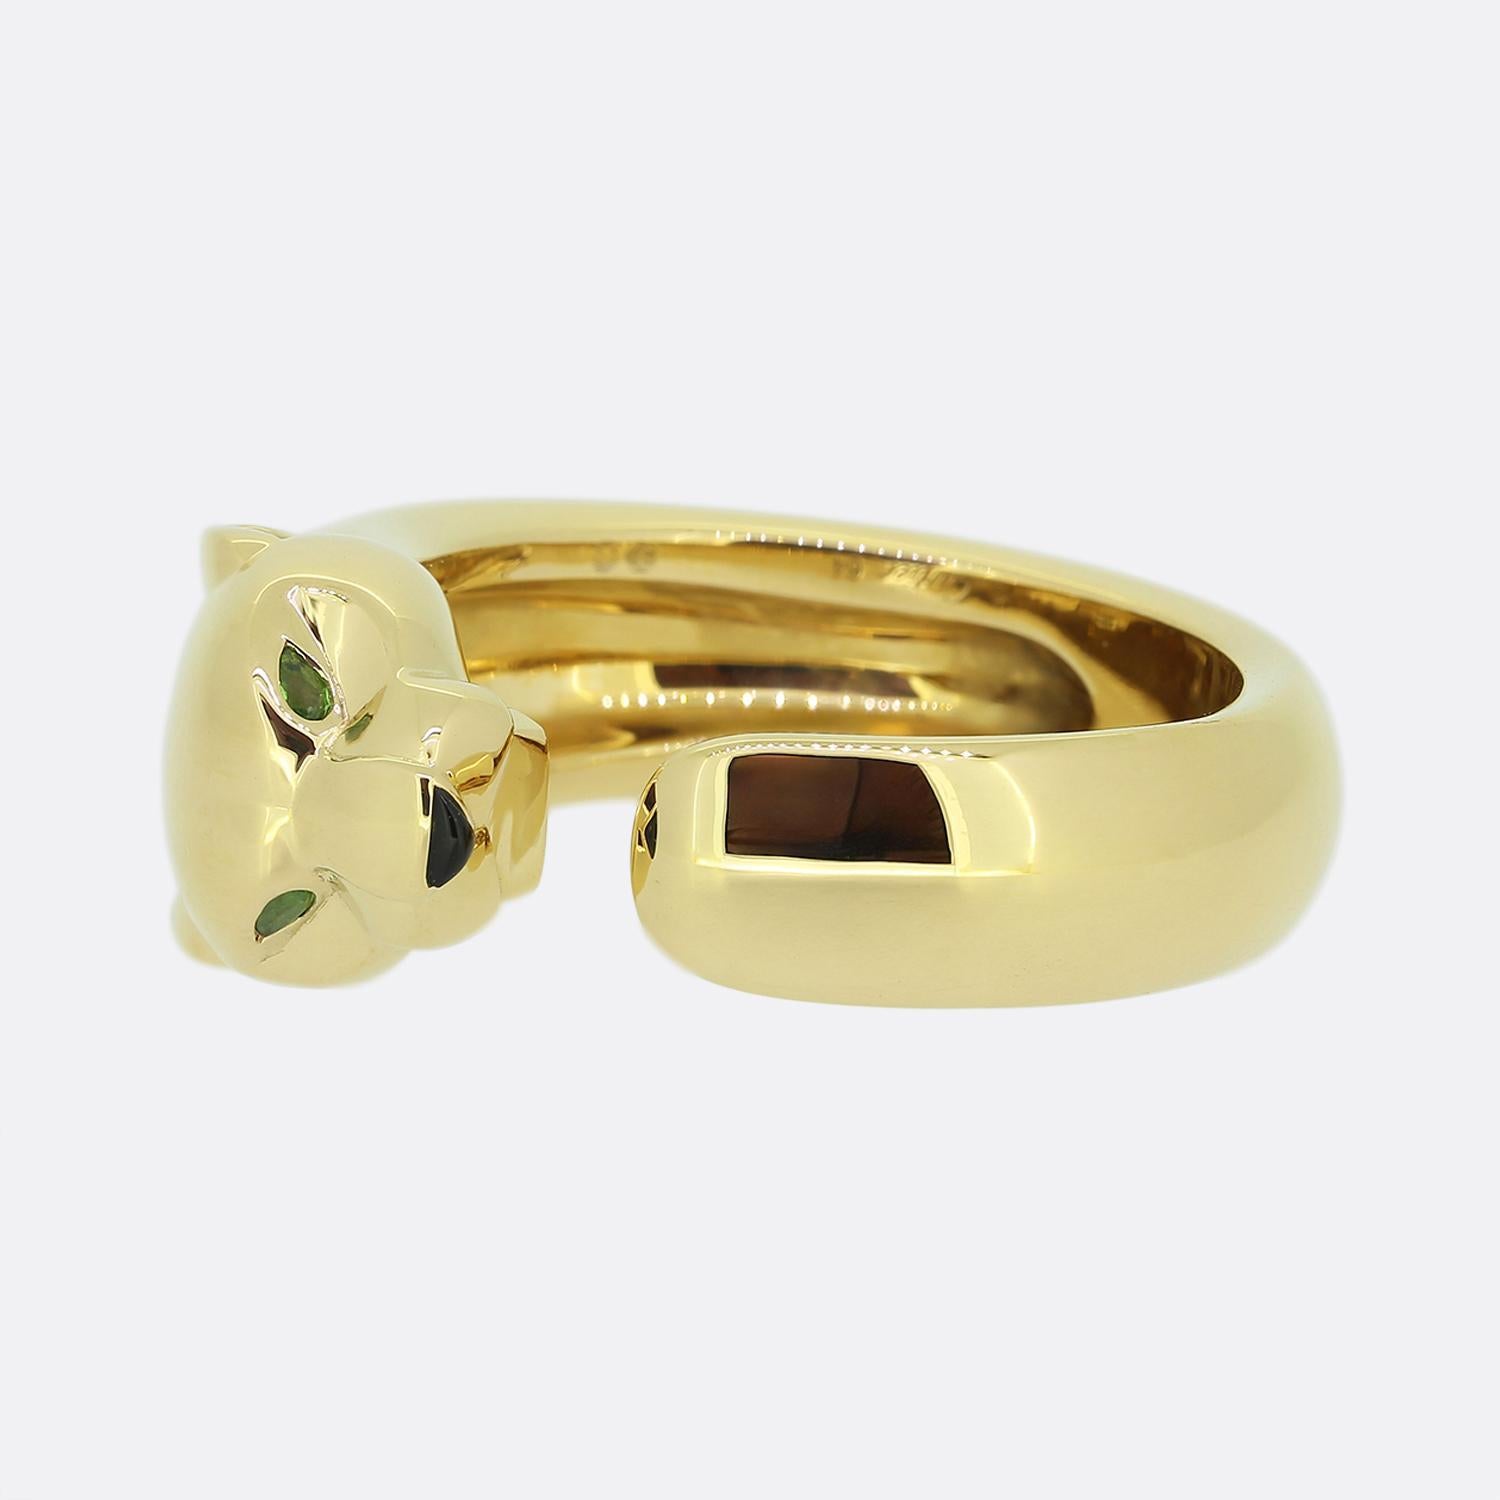 Hier haben wir einen wunderschönen Ring aus dem weltbekannten Schmuckhaus Cartier. Dieses Stück wurde aus 18 Karat Gelbgold in Form eines Panthers mit Tsavorit-Augen und einer Onyxnase gefertigt. Der detailreiche Panther wirkt raubtierhaft,